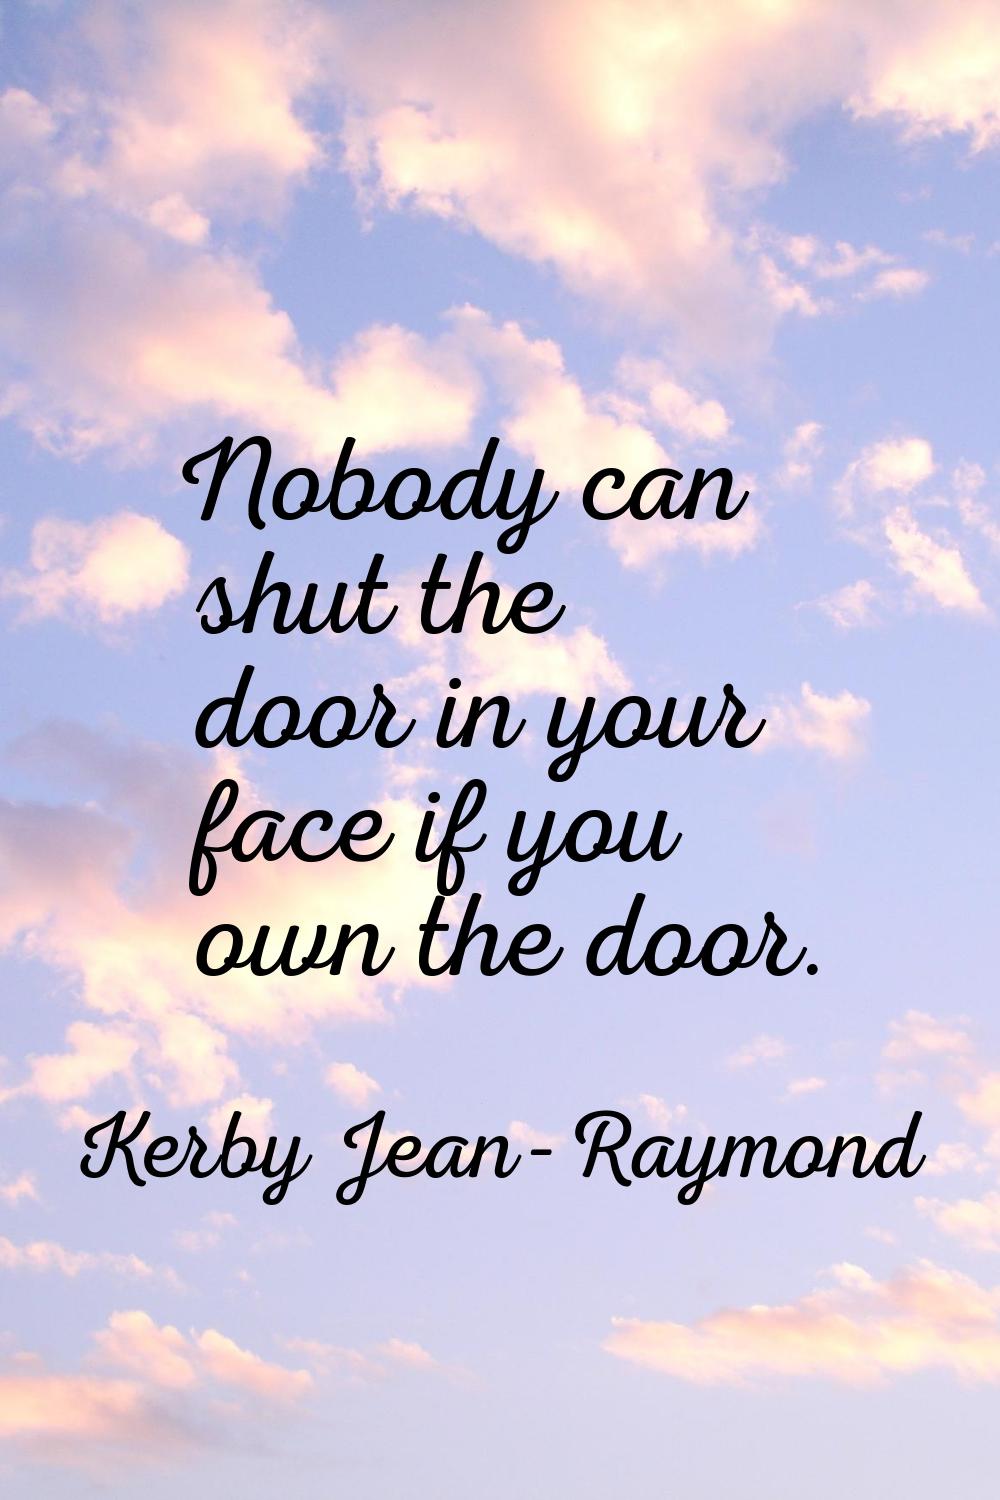 Nobody can shut the door in your face if you own the door.